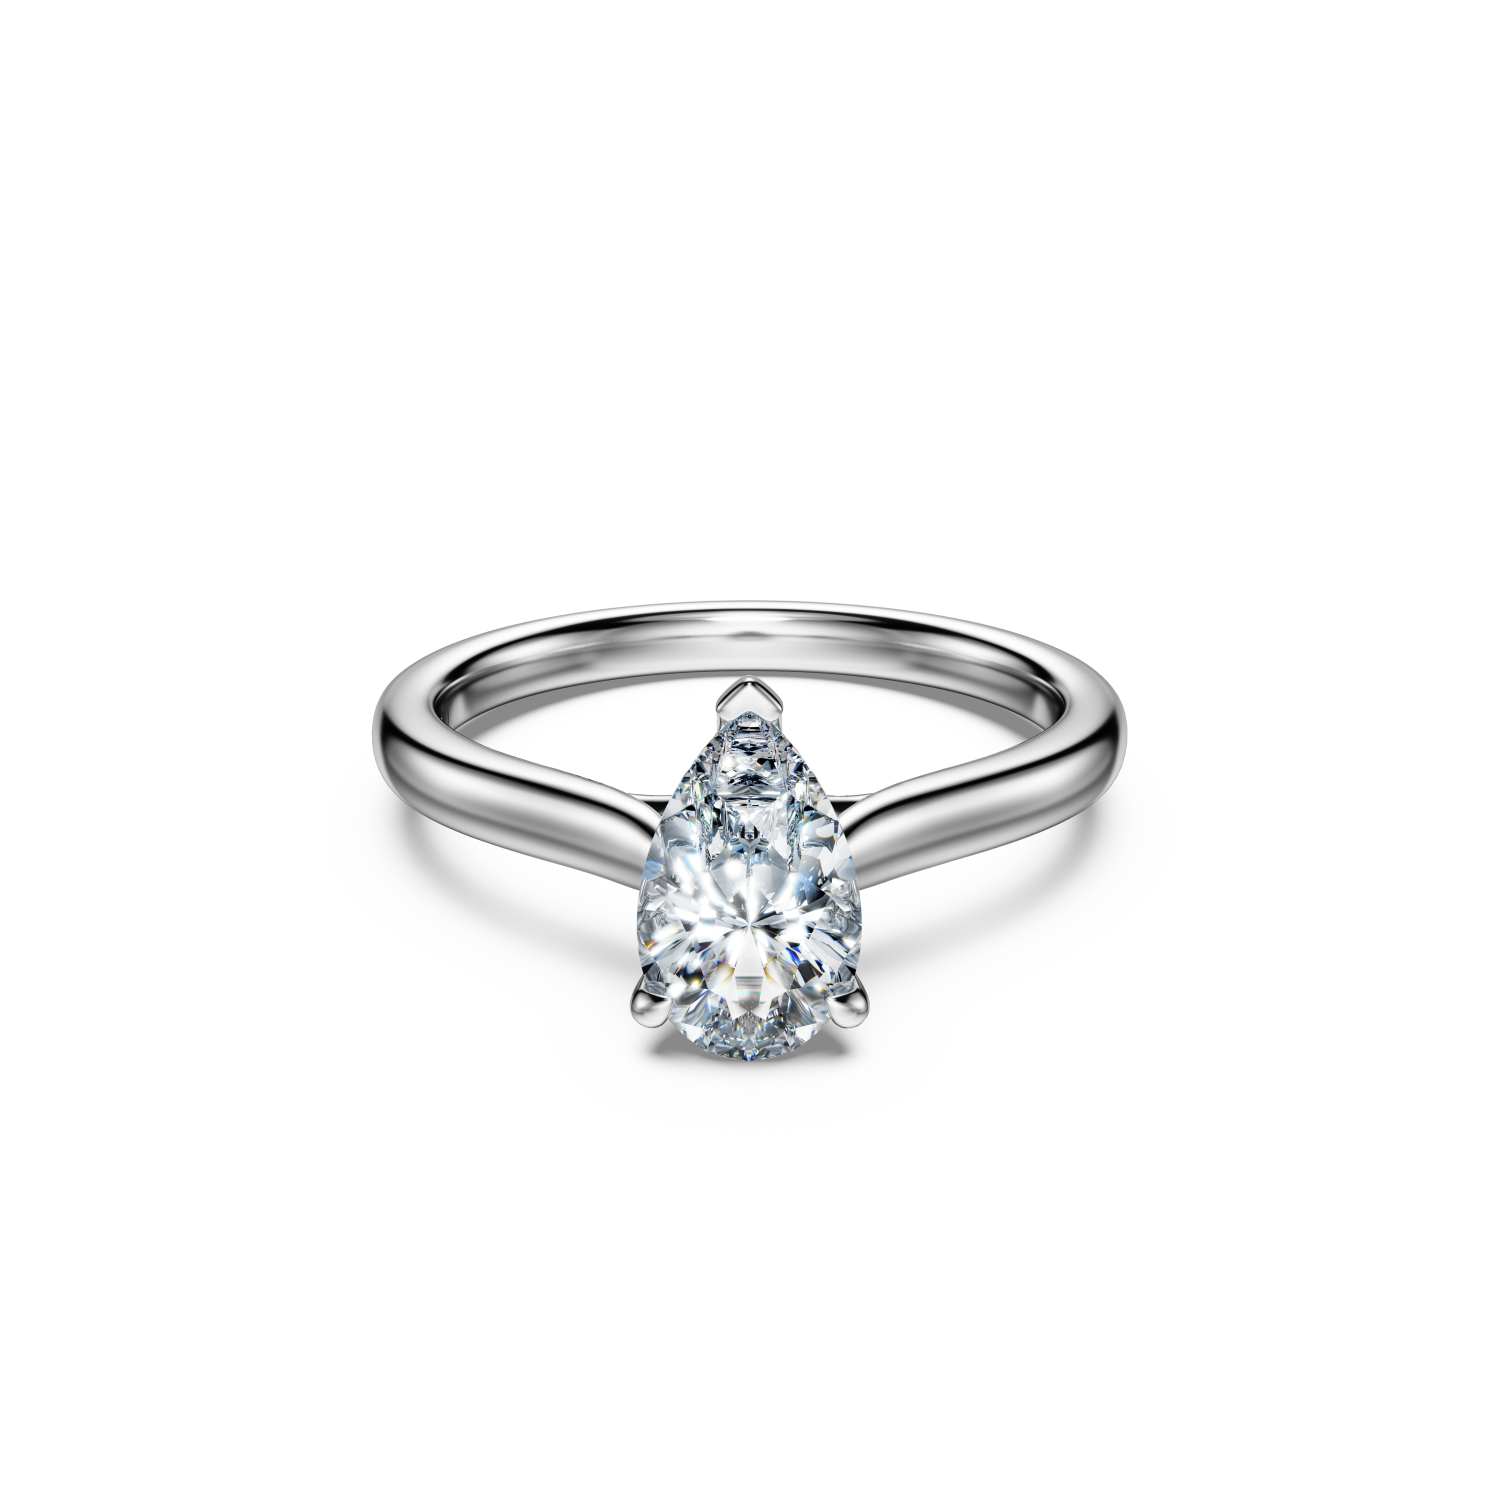 Swarovski - Anello solitario Eternity, Diamanti creati in laboratorio 1 ct tw, Taglio Pear, Oro bianco 18 K Ref. 5699615 - SWAROVSKI